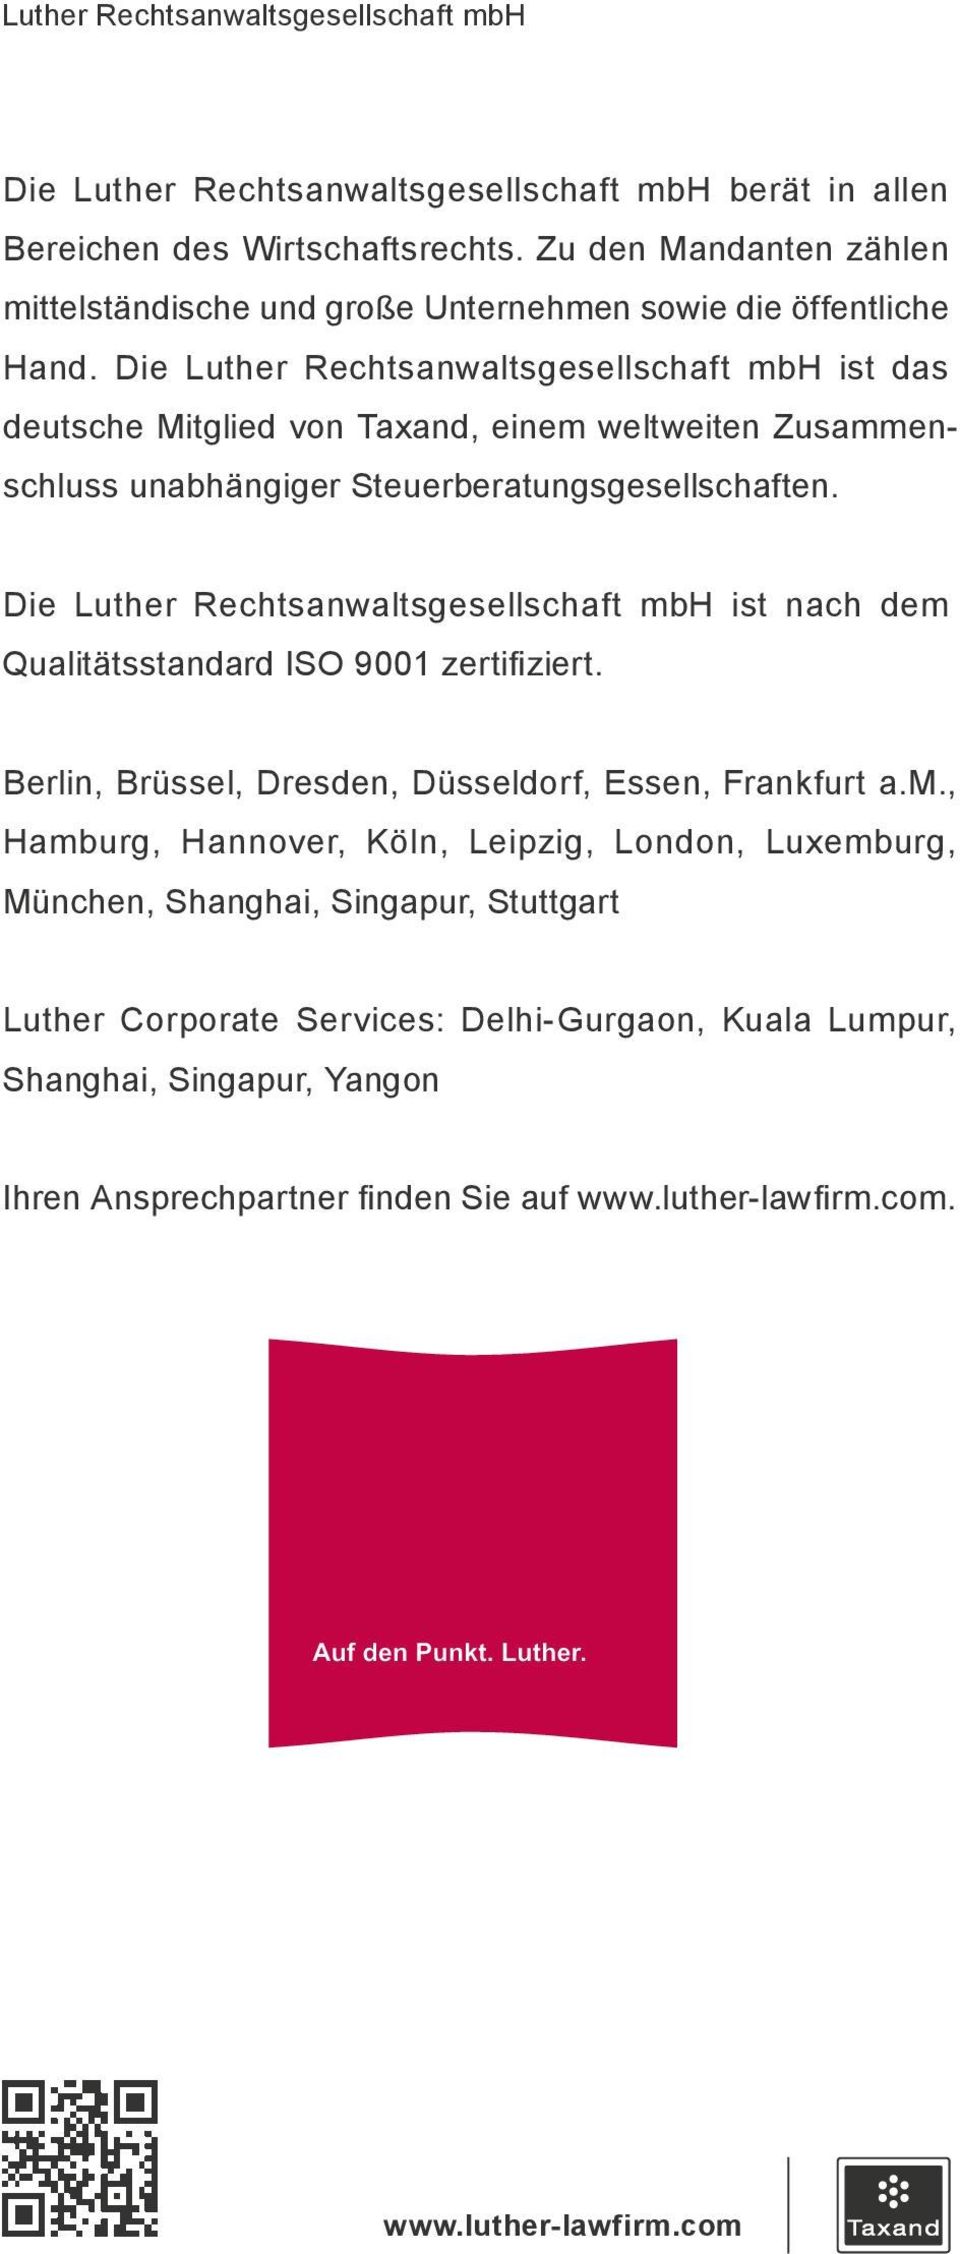 Die Luther Rechtsanwaltsgesellschaft mbh ist das deutsche Mitglied von Taxand, einem weltweiten Zusammen - schluss unabhängiger Steuerberatungsgesellschaften.